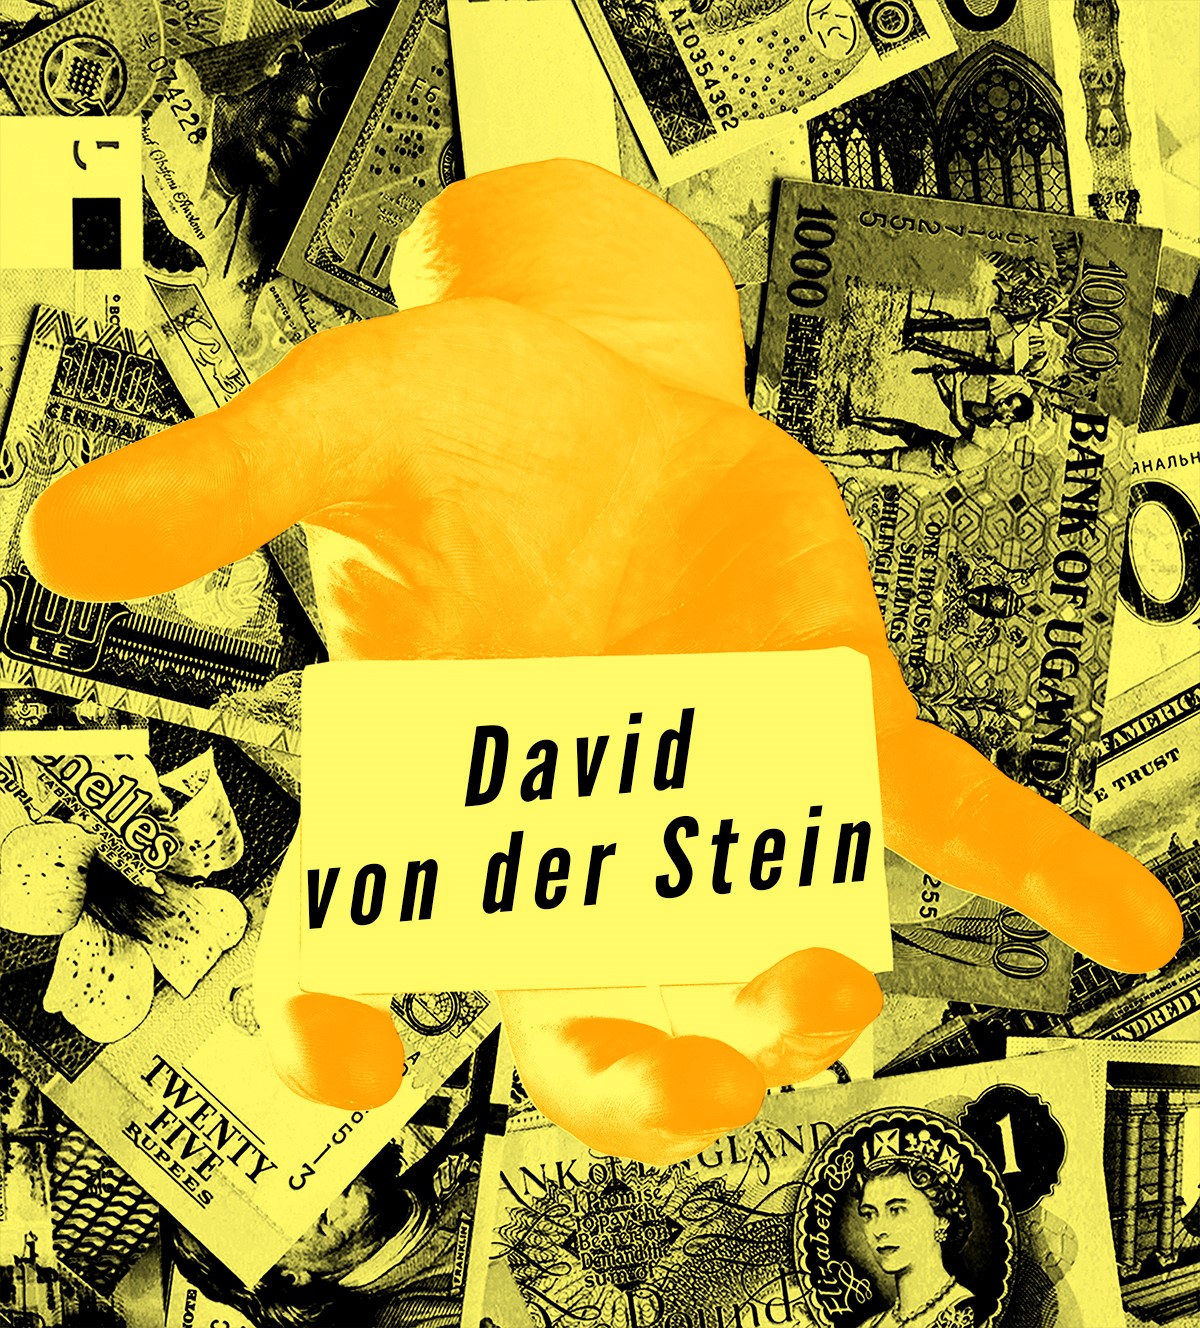 Stichpröbchen presents: David von der Stein